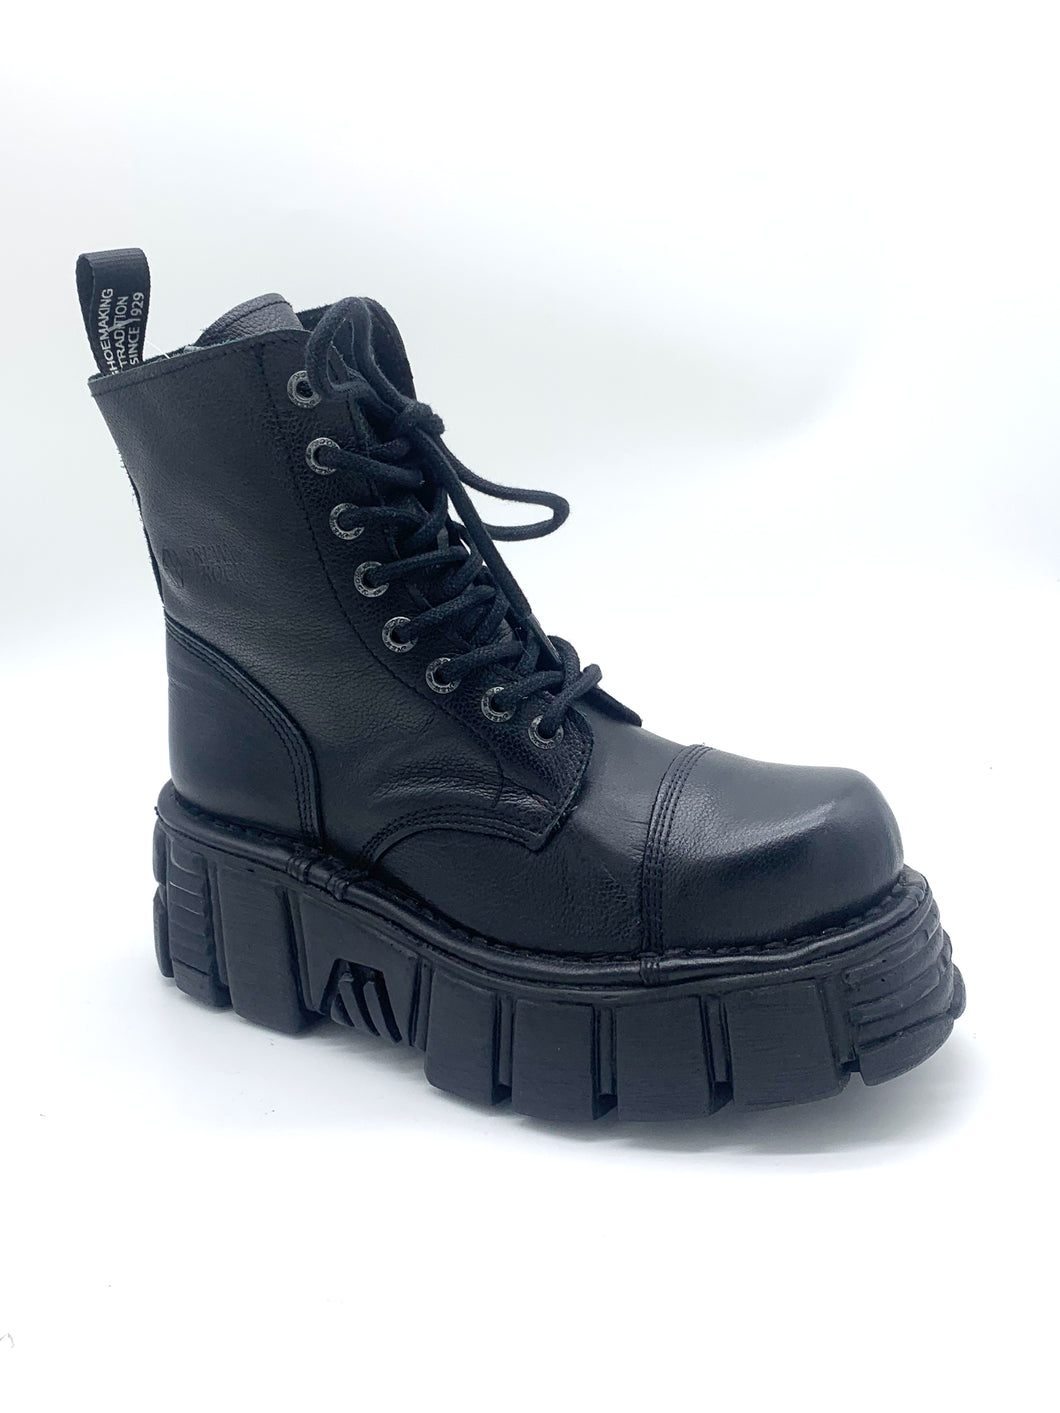 New Rock Boots Stiefel Echtleder 8 Loch mit Plateu Absatz (weiches, feinnarbiges Leder)